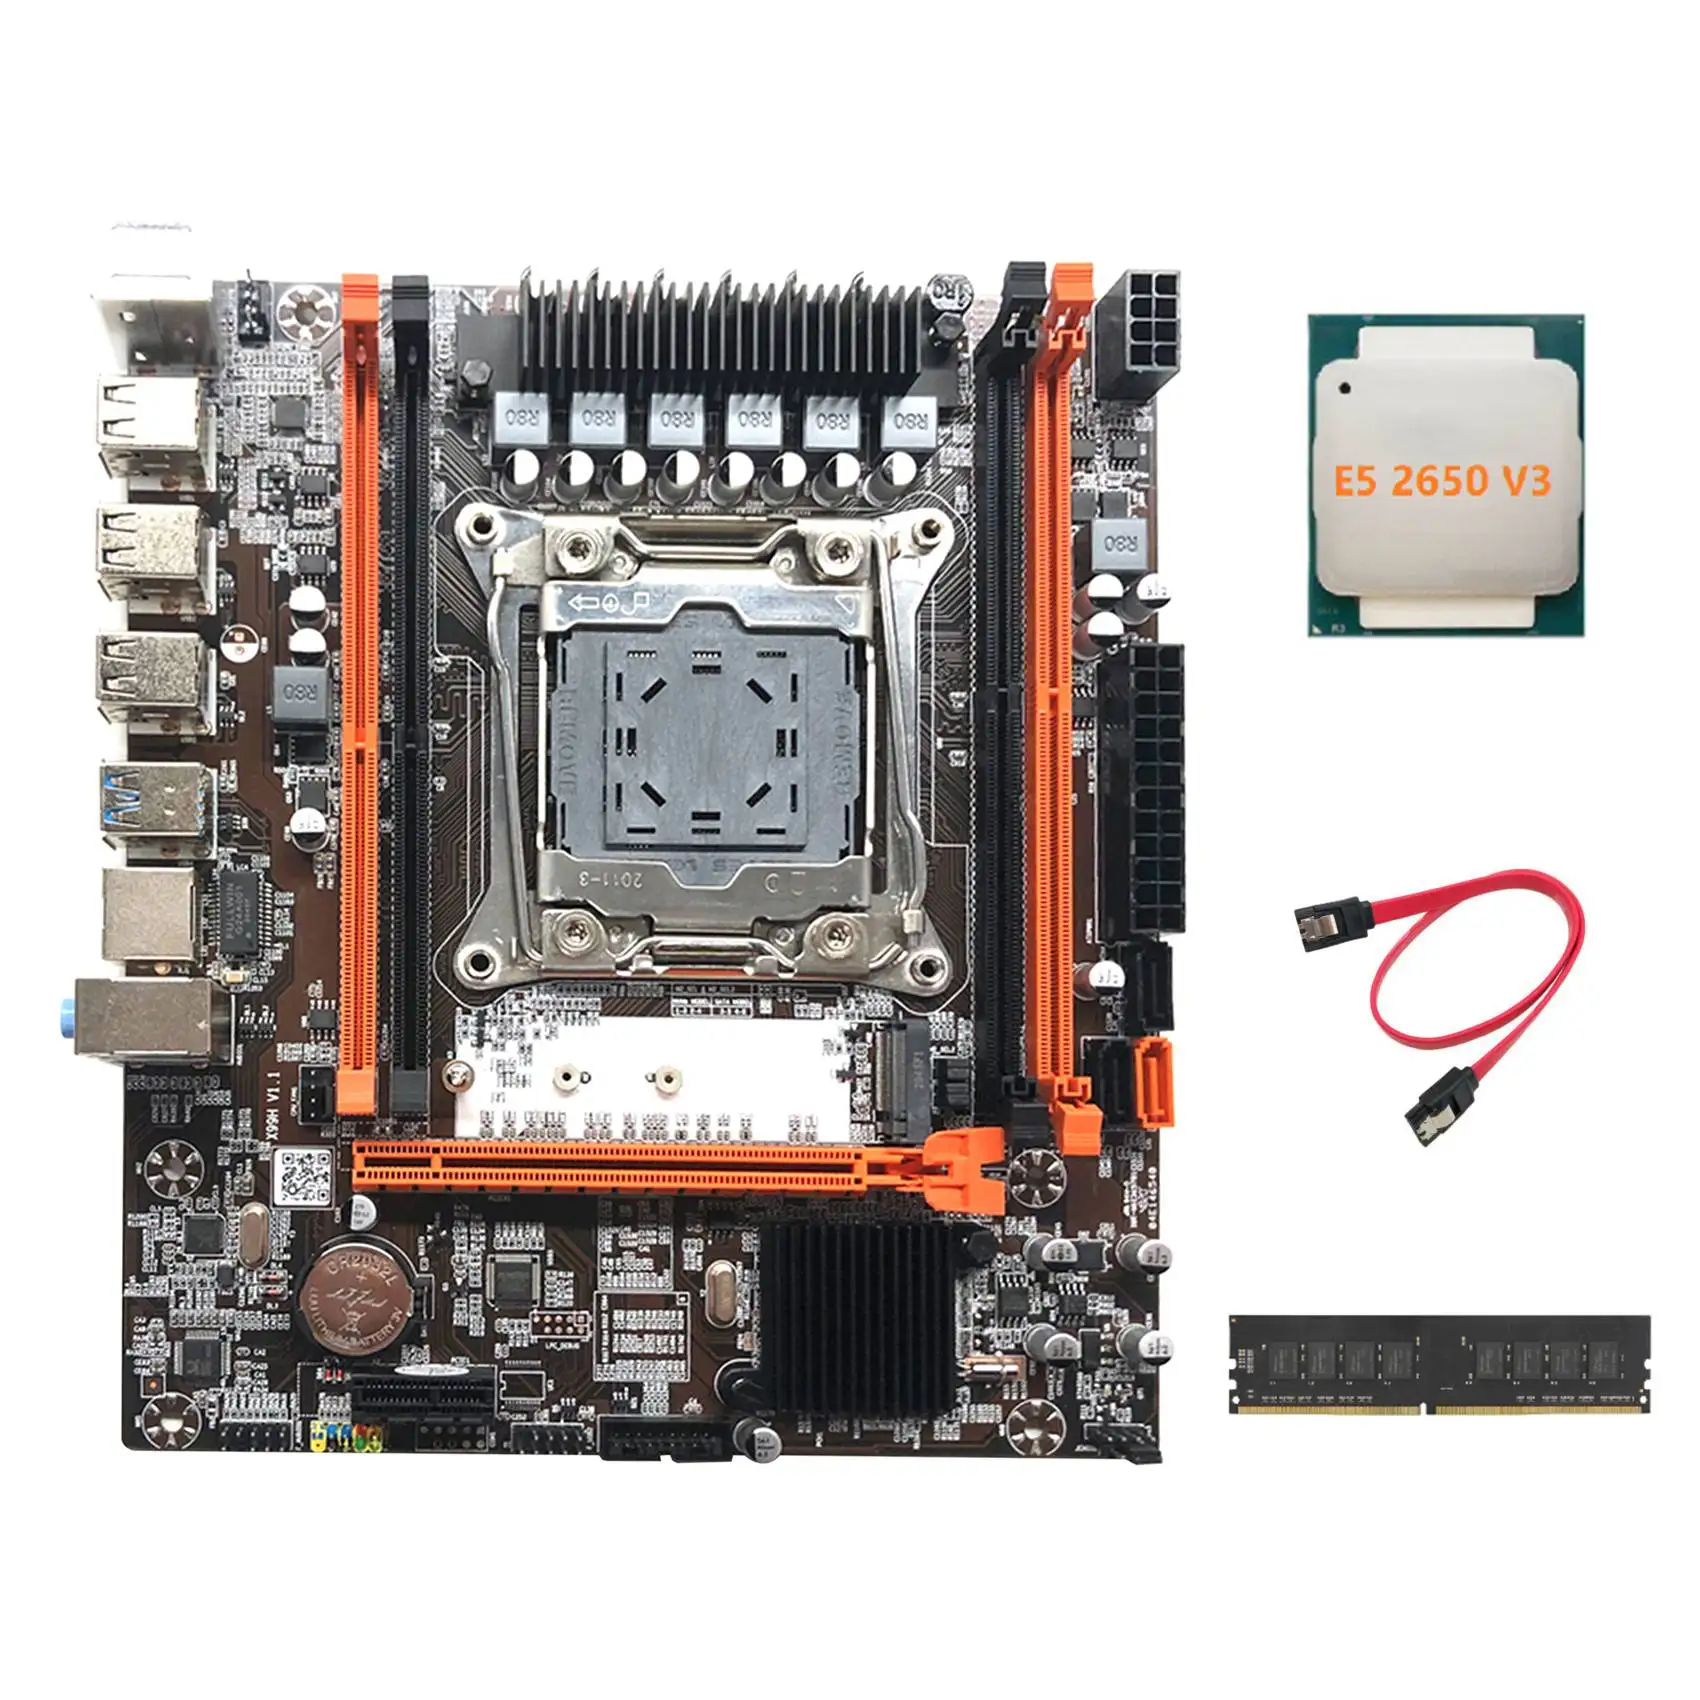 

Материнская плата X99H, материнская плата для компьютера, поддерживает Память DDR4 с процессором E5 2650 V3 + DDR4 4G 2666 МГц ОЗУ + кабель SATA